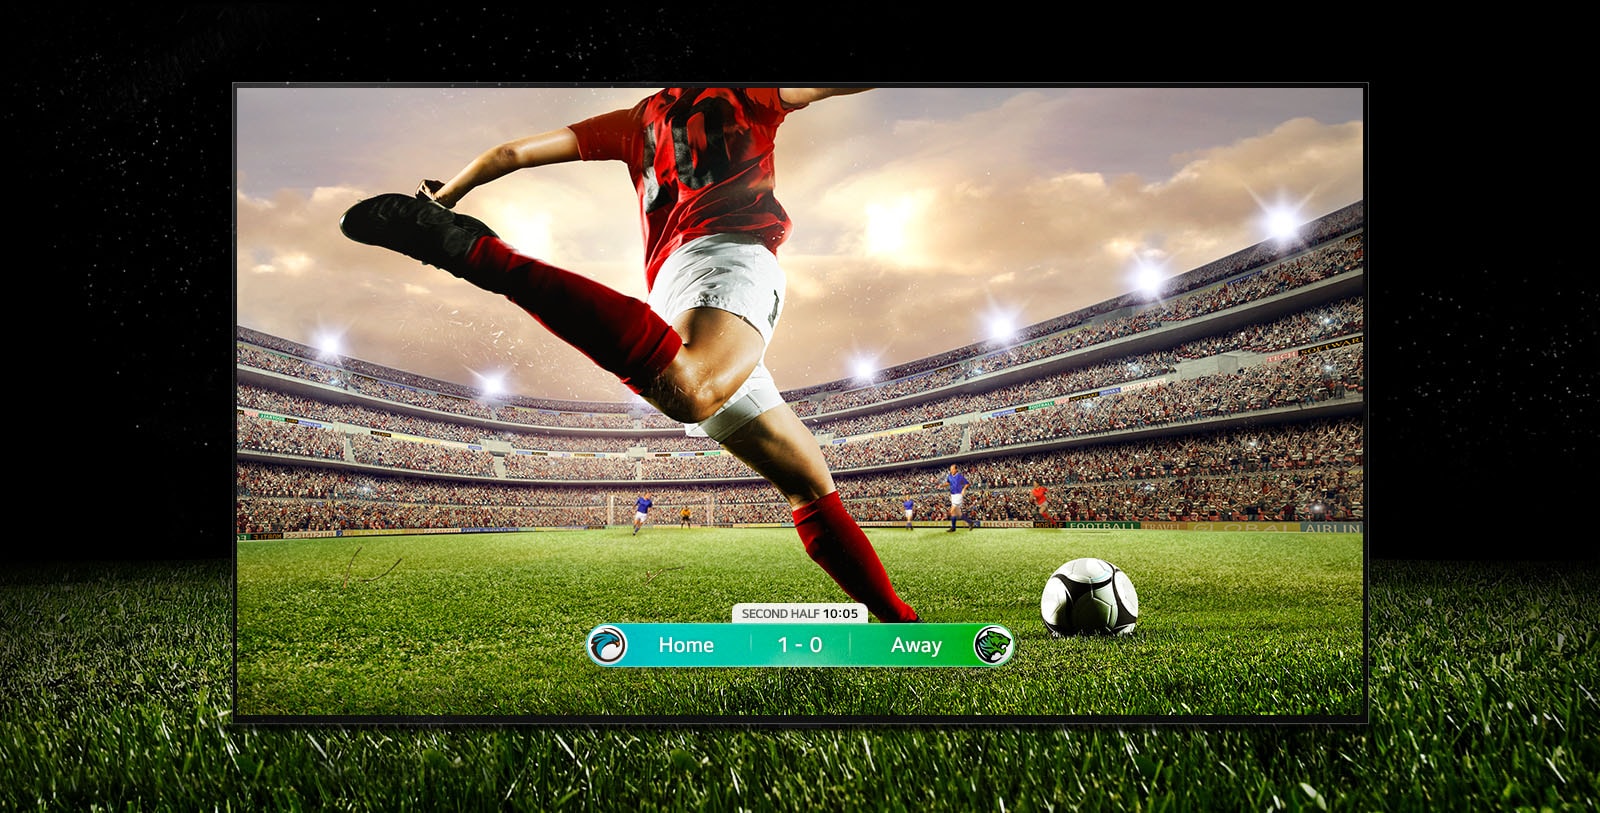 A képen látható képernyőn egy futballjátékban a piros csíkos mezes játékos éppen át akarja rúgni a labdát a stadion túlsó végére. A meccs állása a képernyő alján látható. A pálya zöld füve túlterjed a képernyőn a fekete háttérre.